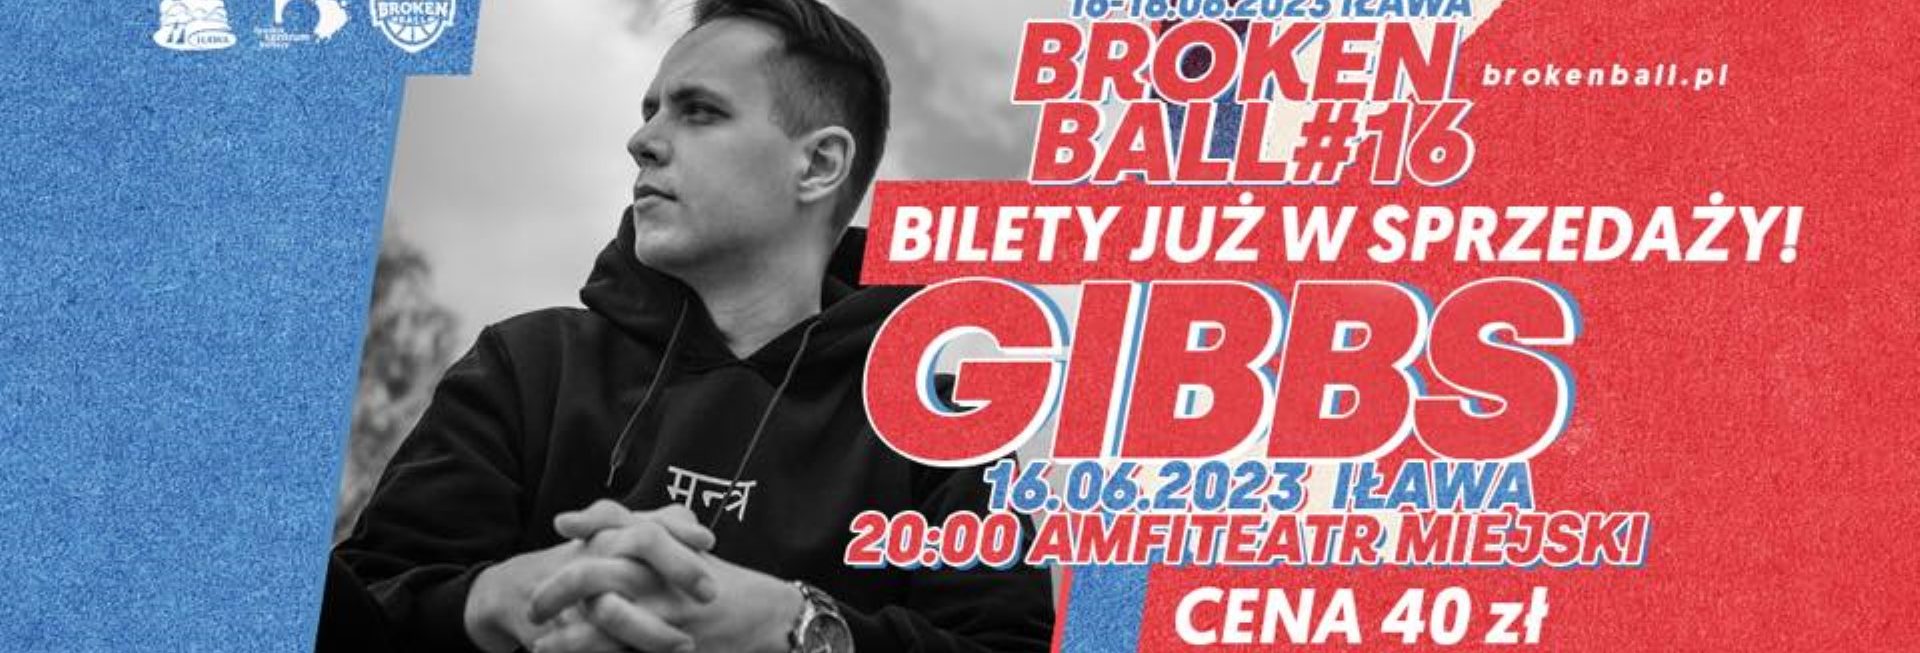 Plakat zapraszający w piątek 16 czerwca 2023 r. do Iławy na koncert GIBBS - Broken Ball #16 Iława 2023.